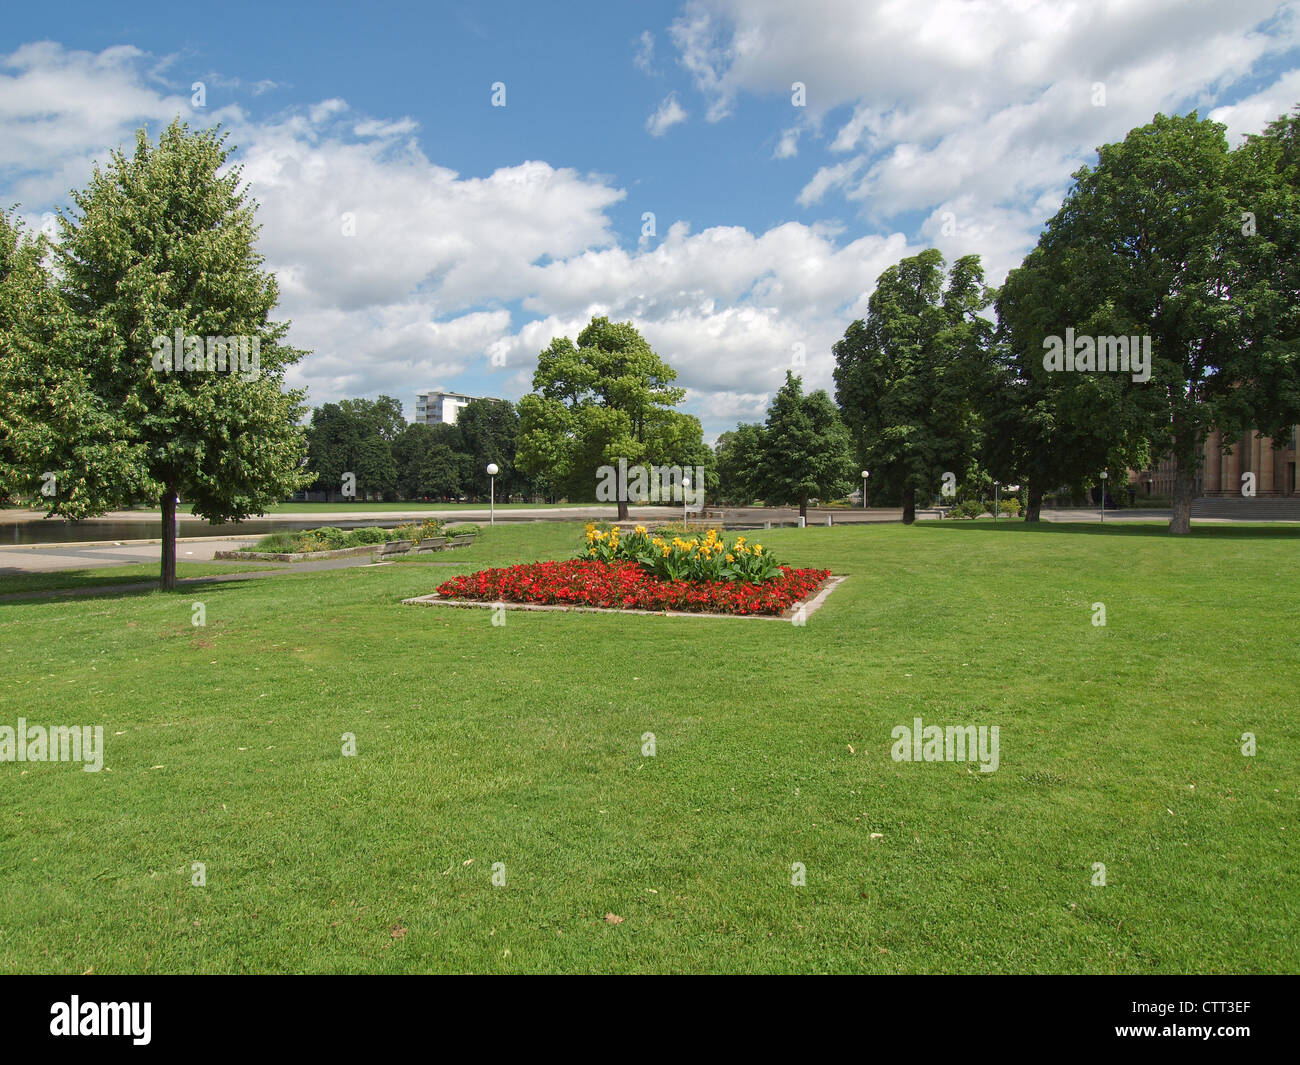 The Oberer Schlossgarten park in Stuttgart, Germany Stock Photo